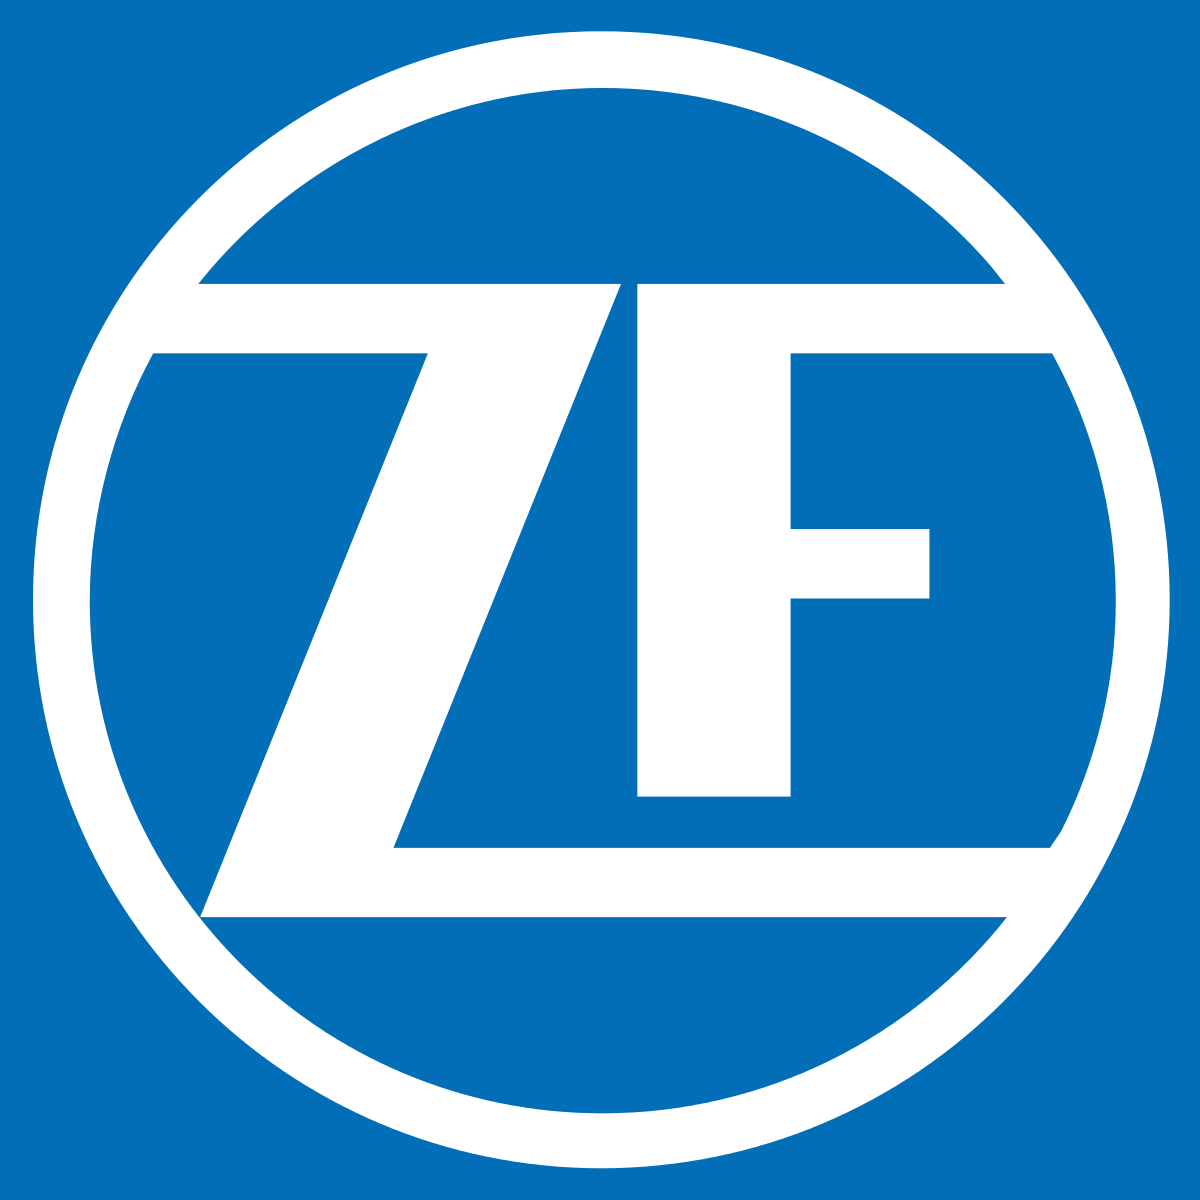 ZF TRW Logo - ZF Friedrichshafen